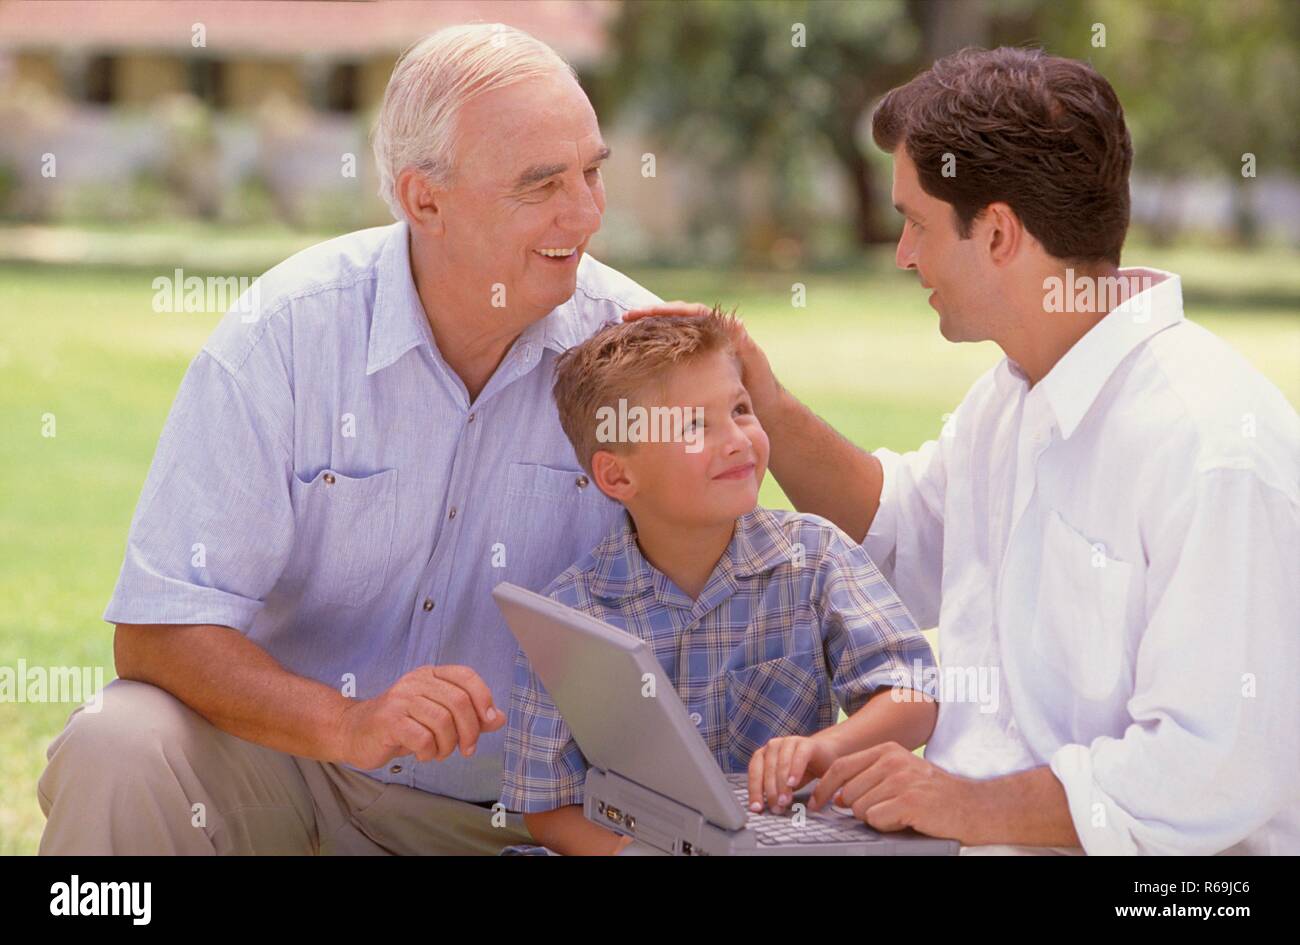 Parkszene, Portrait, 3 Generationen, weisshaariger Senior, dunkelhaariger Mann, Mitte 30, bekleidet mit hellen Hemden und blonder Junge mit kariertem Hemd, 6 Jahre, sitzen mit einem Laptop auf einer Wiese Stock Photo